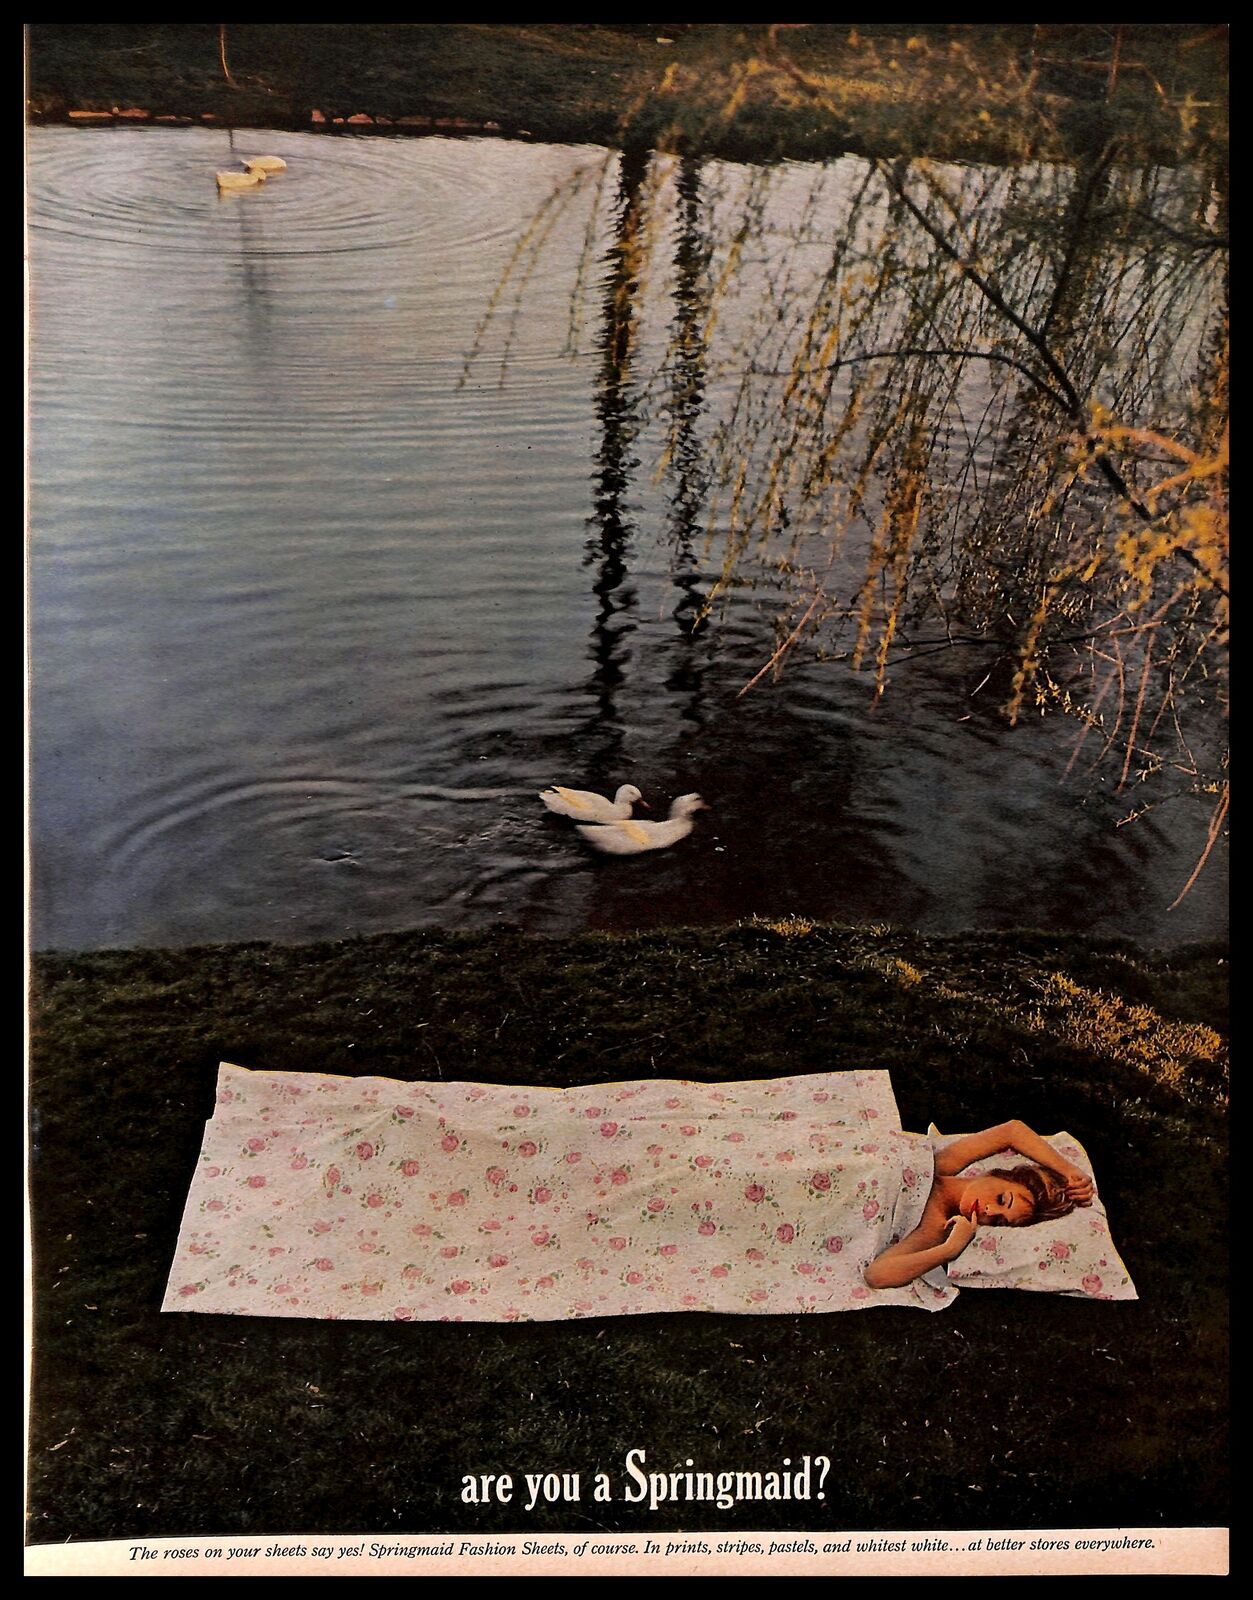 1960 Springmaid Fashion Sheets Vintage PRINT AD Bedding Lady Sleeping Lake Ducks